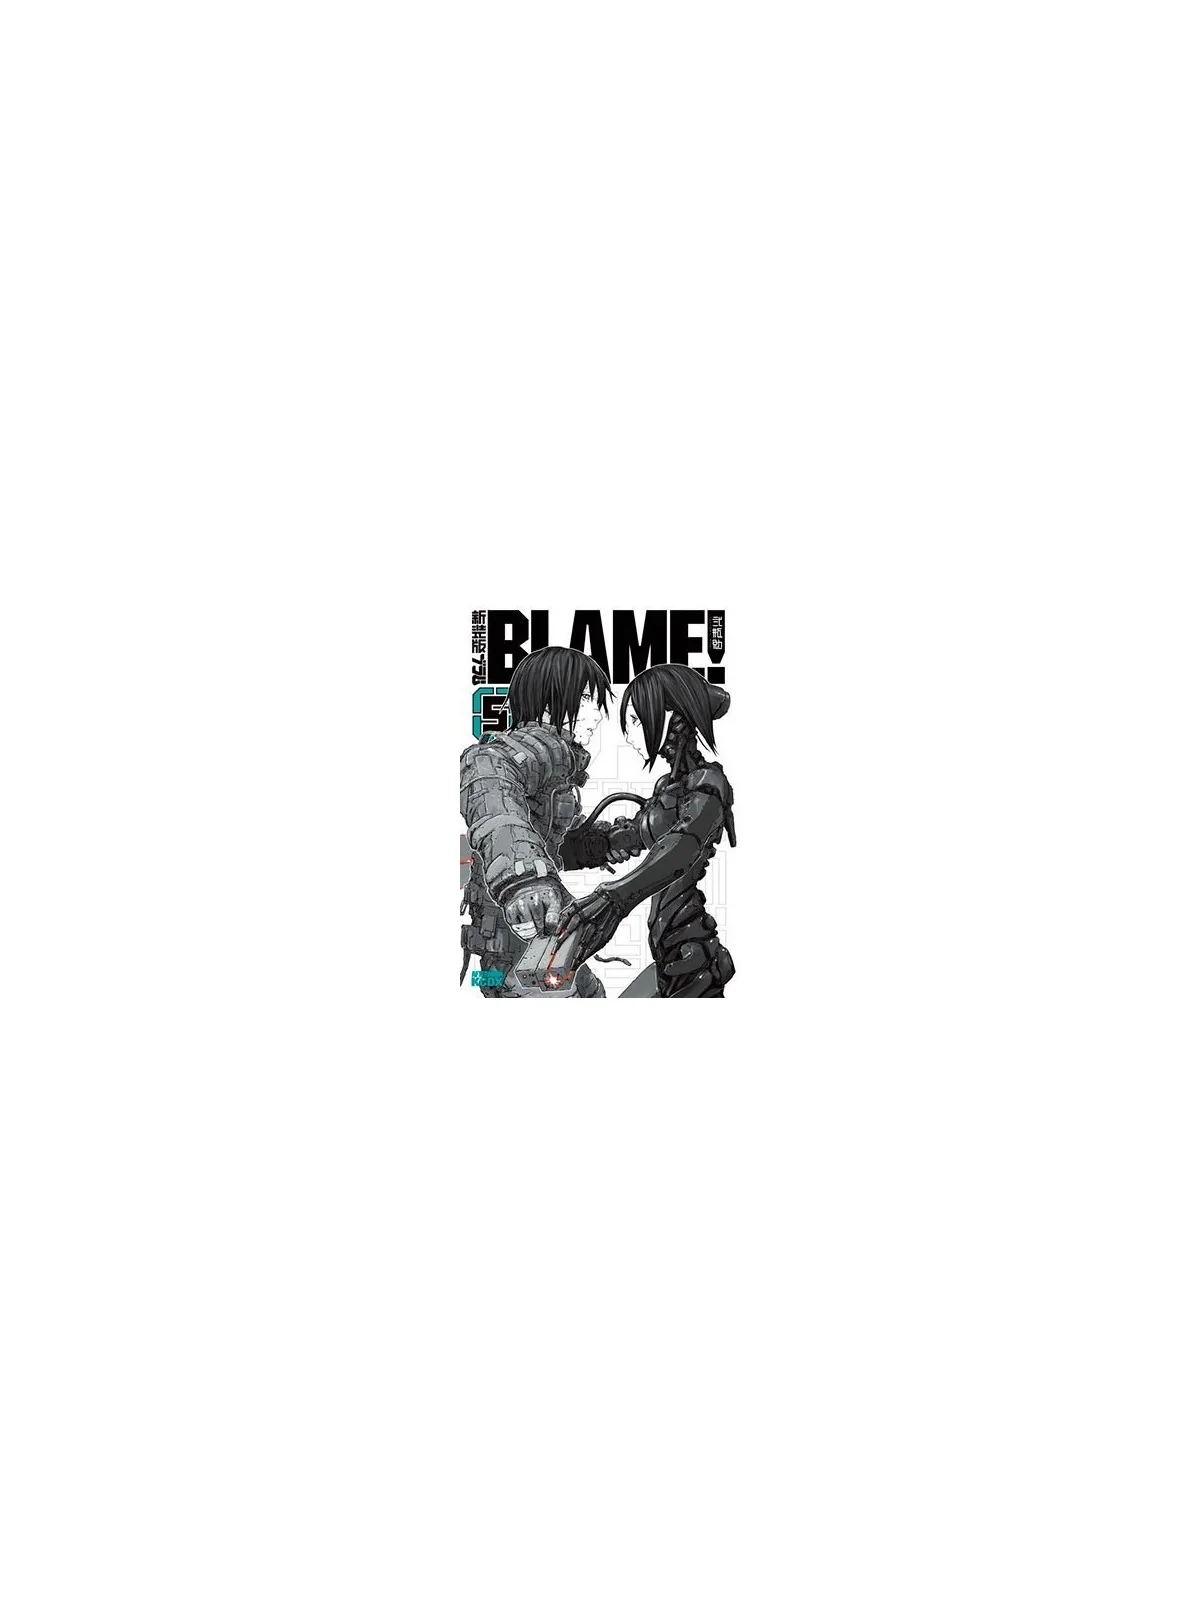 Comprar Blame! Master Edition 05 barato al mejor precio 19,00 € de Pan